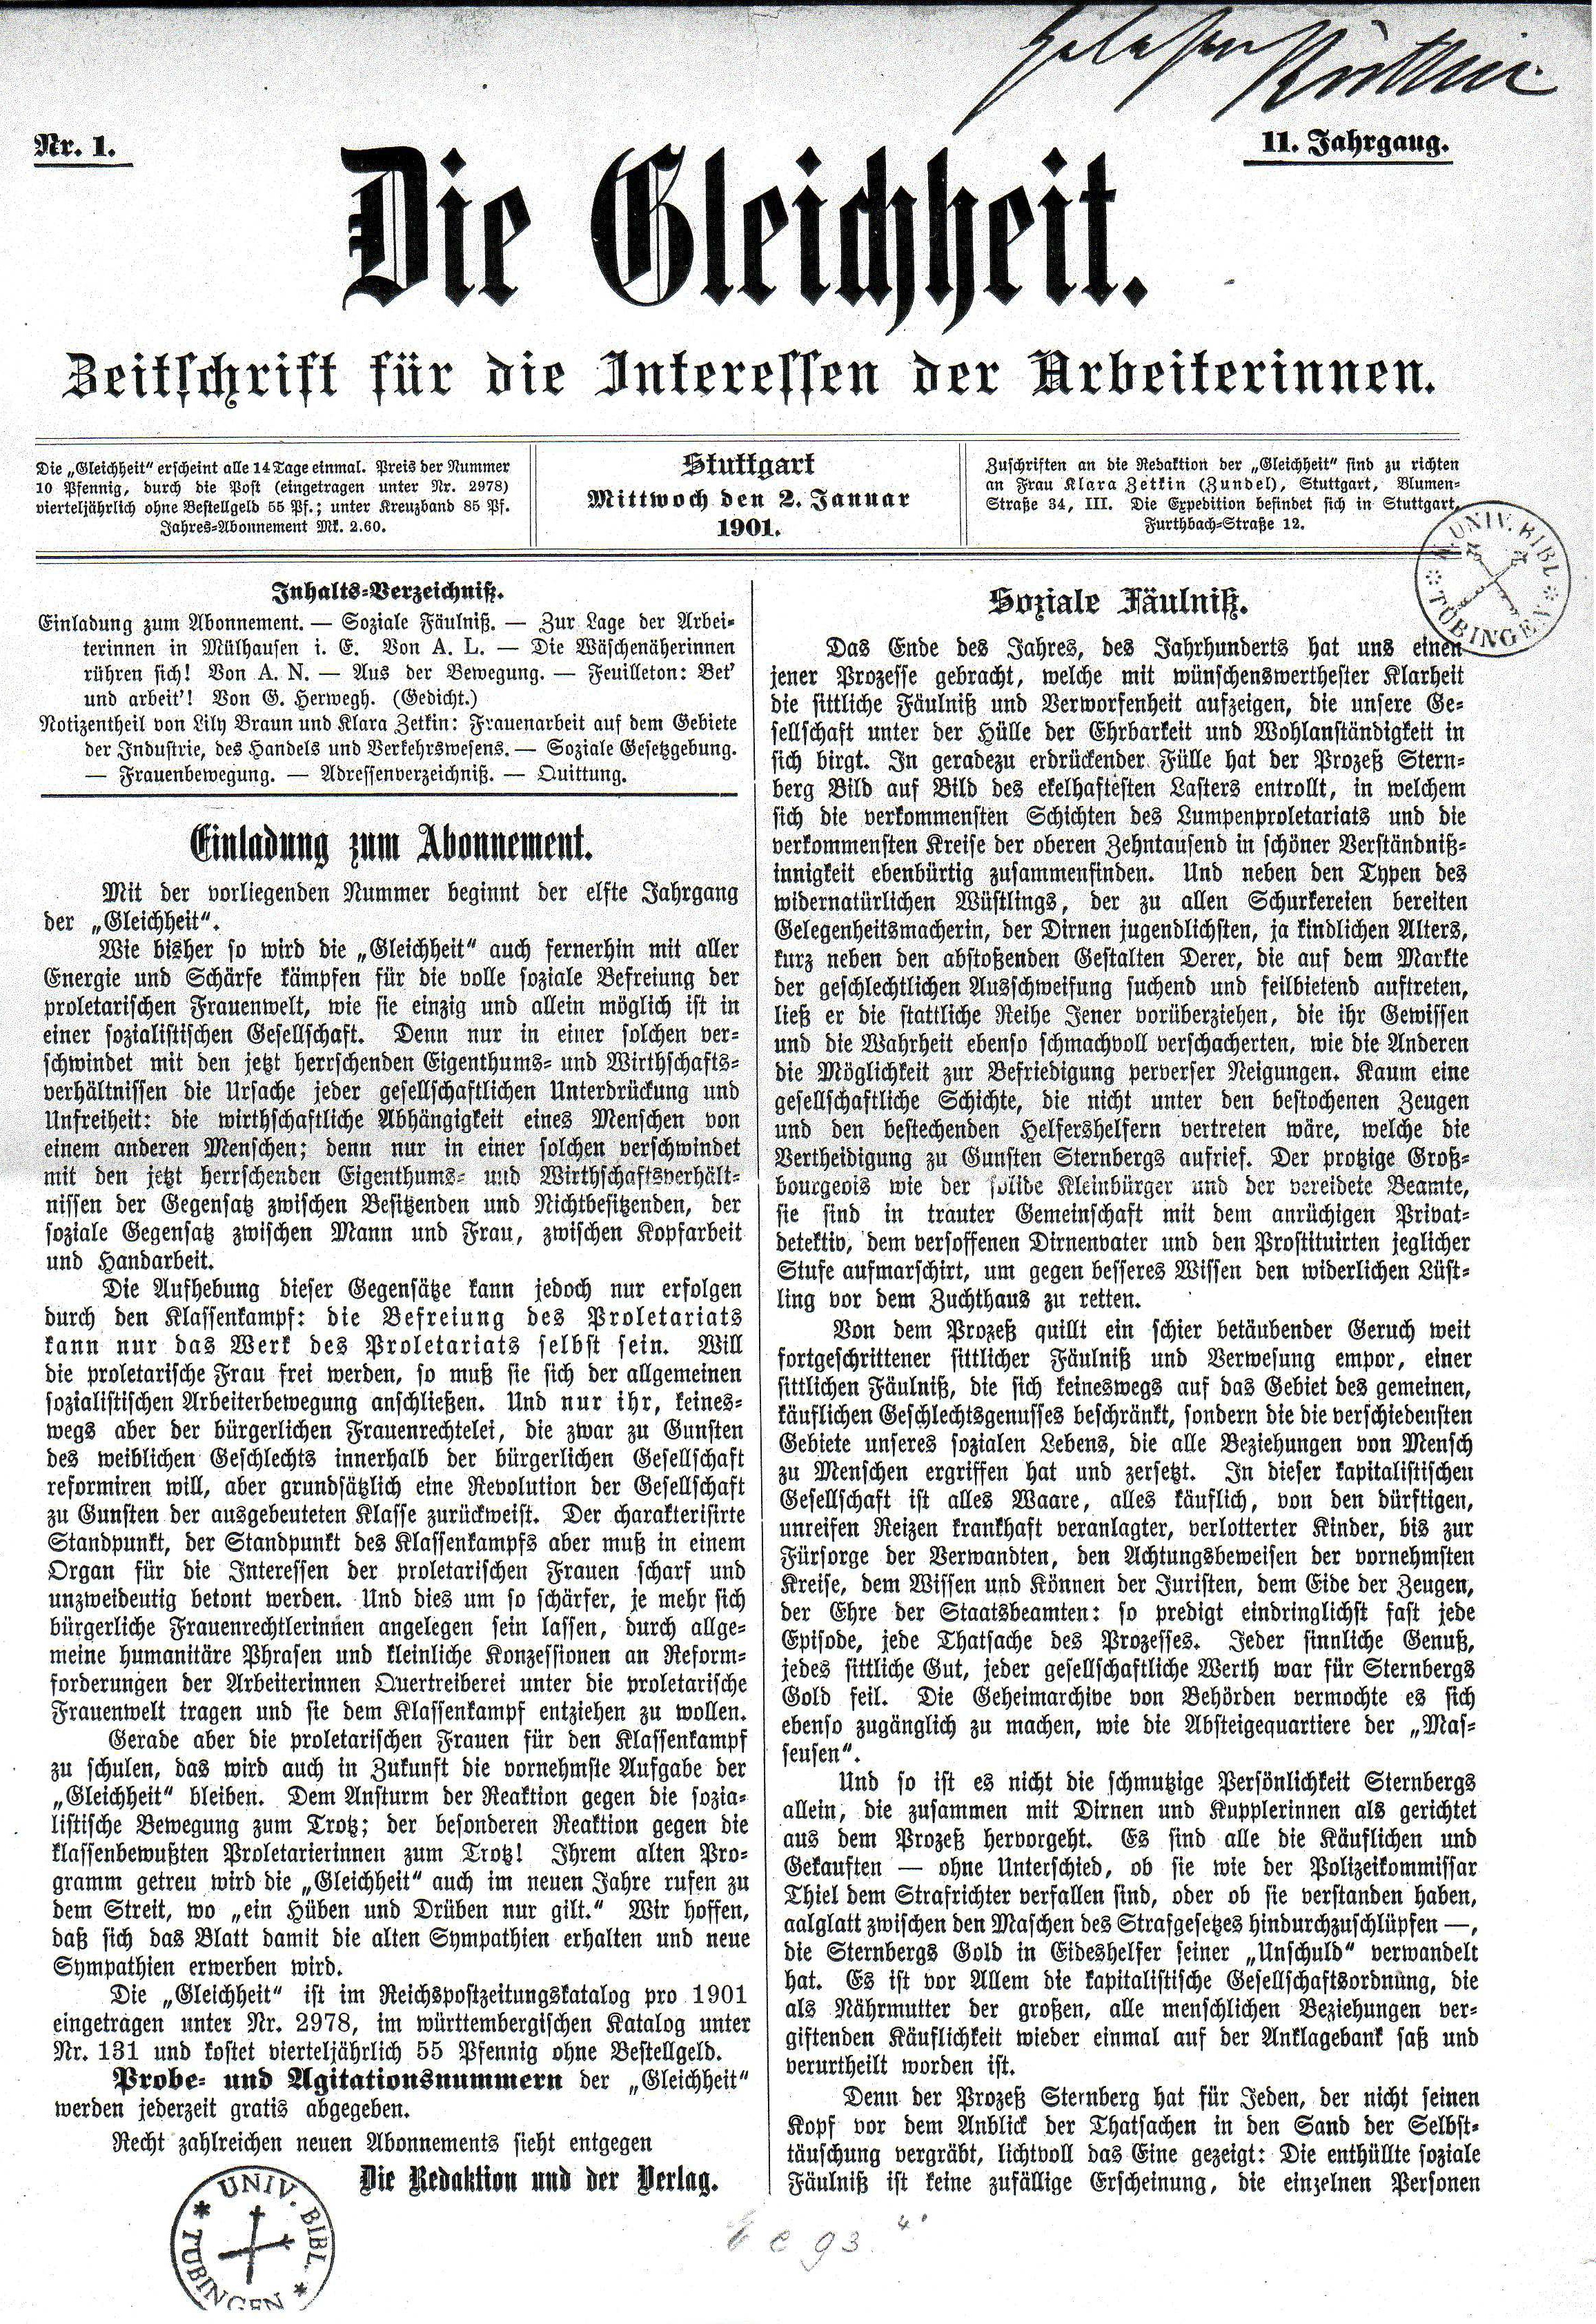 Die Zeitschrift Gleichheit, Ausgabe von 1901